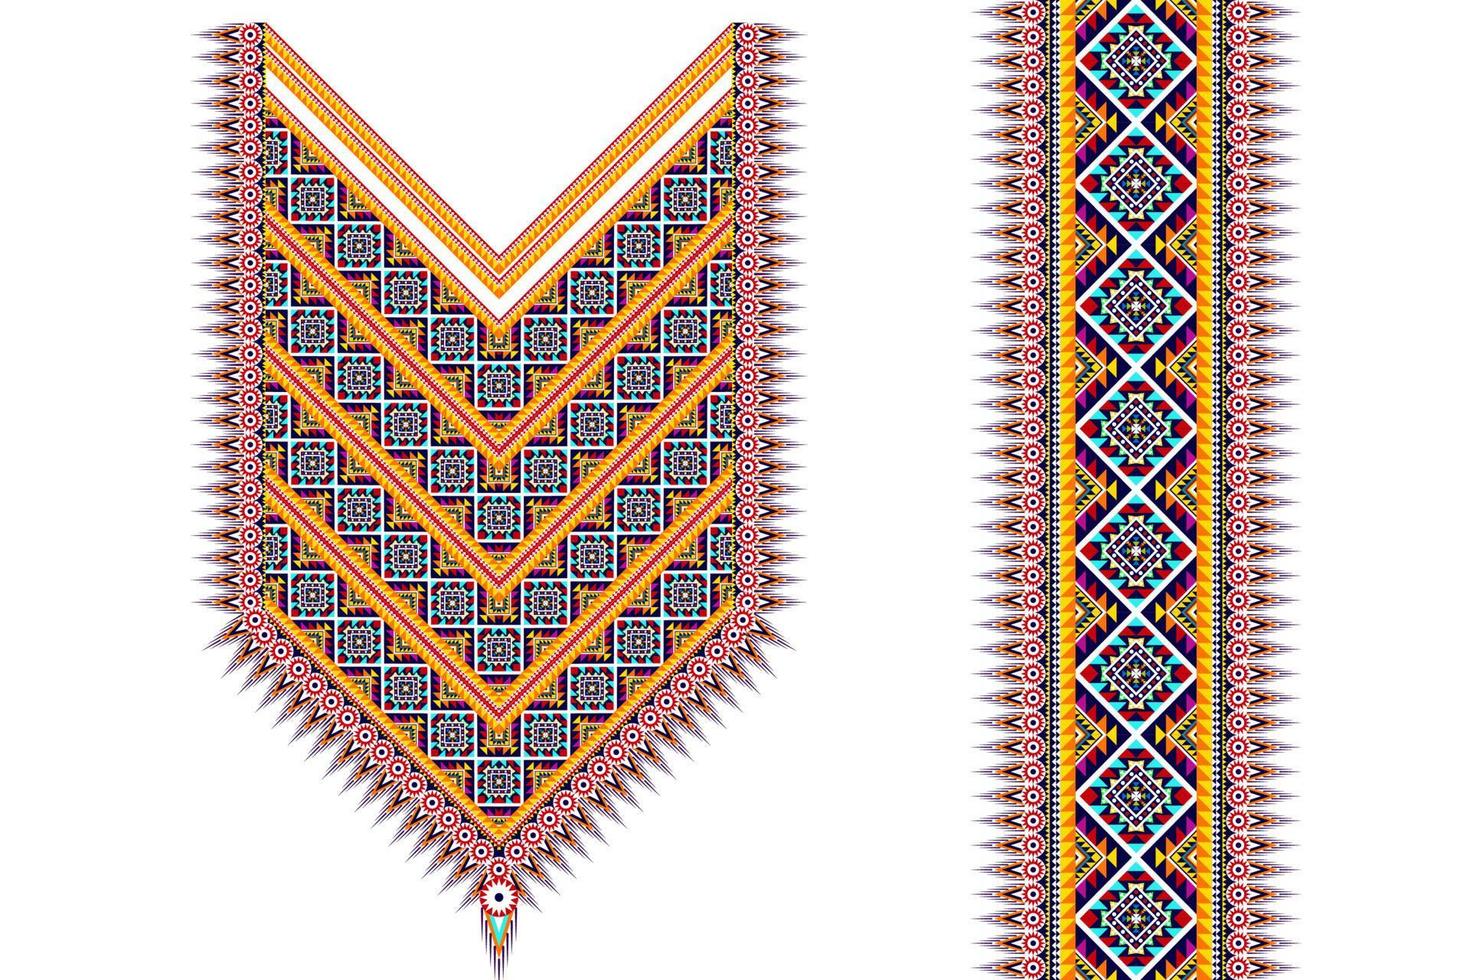 geometrische etnische hals borduurwerk patroon ontwerp. Azteekse stof tapijt mandala ornament chevron ketting textiel. tribal boho inheemse etnische nek borduurwerk vector